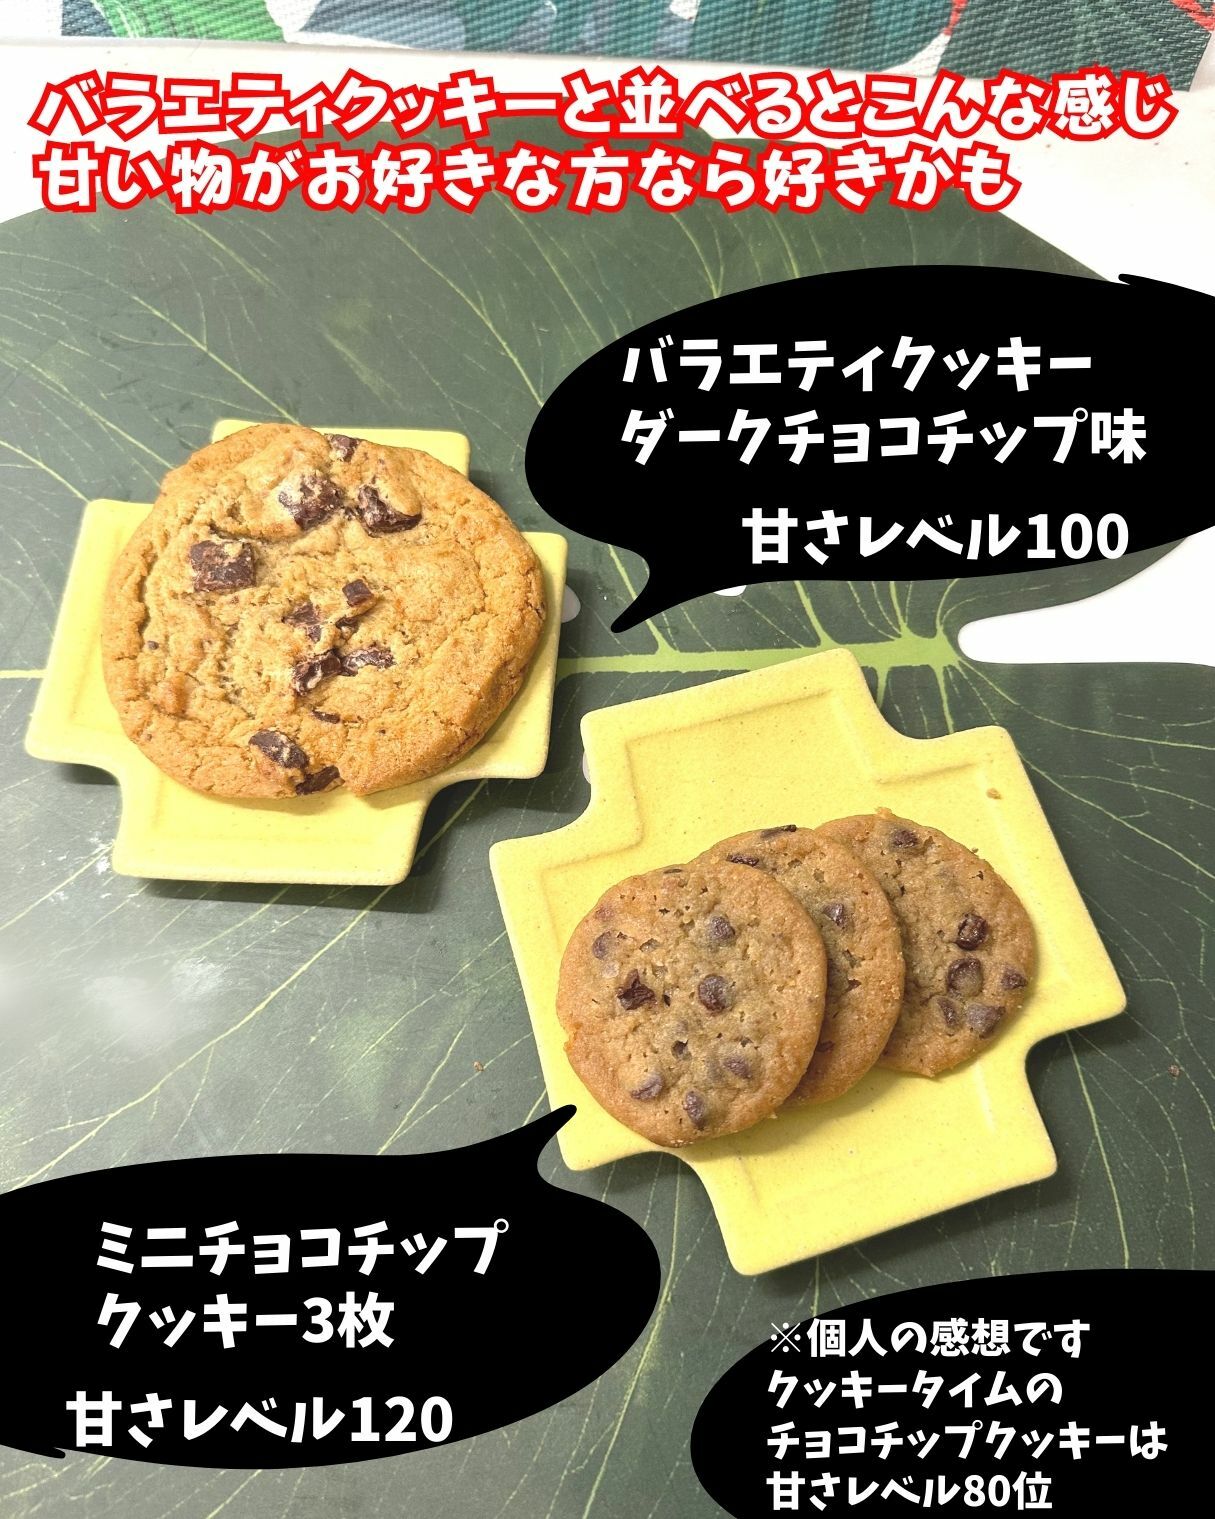 【コストコ】ミニチョコチップクッキーとバラエティクッキーの比較